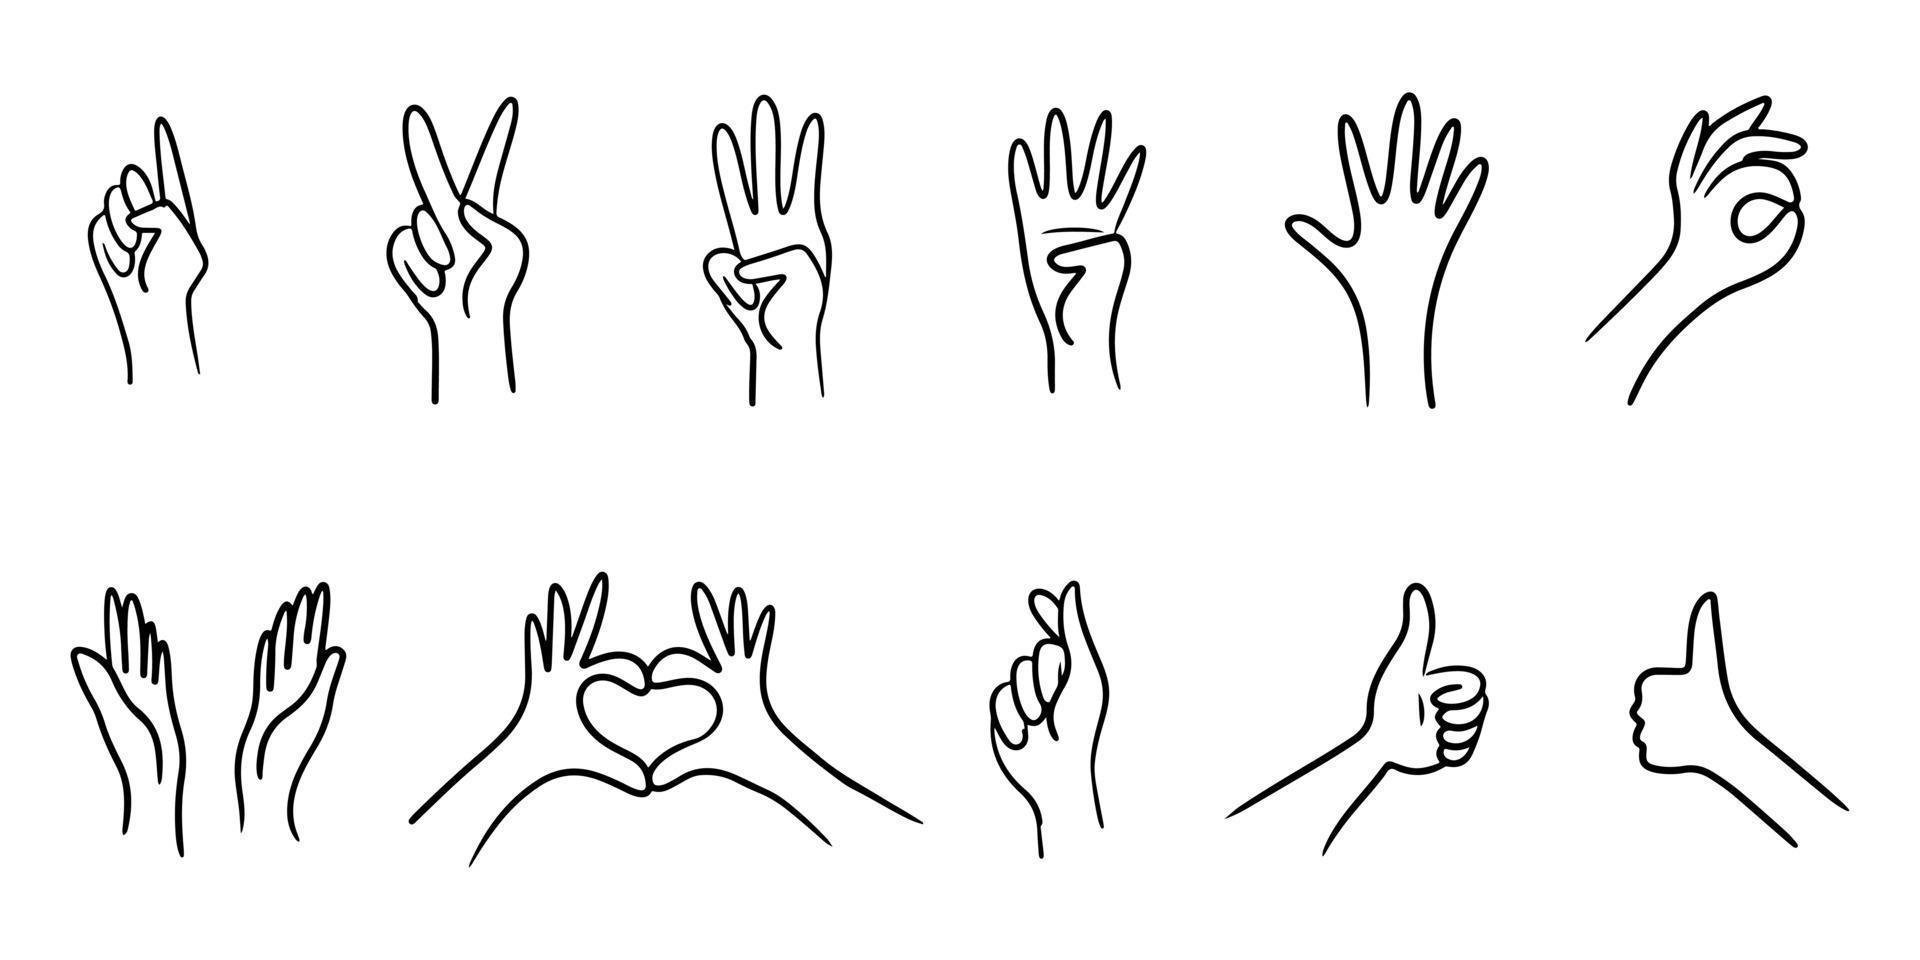 ensemble de gestes de la main dessinés à la main. style de croquis dessiné à la main d'applaudissements, geste du pouce levé. mains humaines applaudissant ovation. sur le style doodle, illustration vectorielle. vecteur